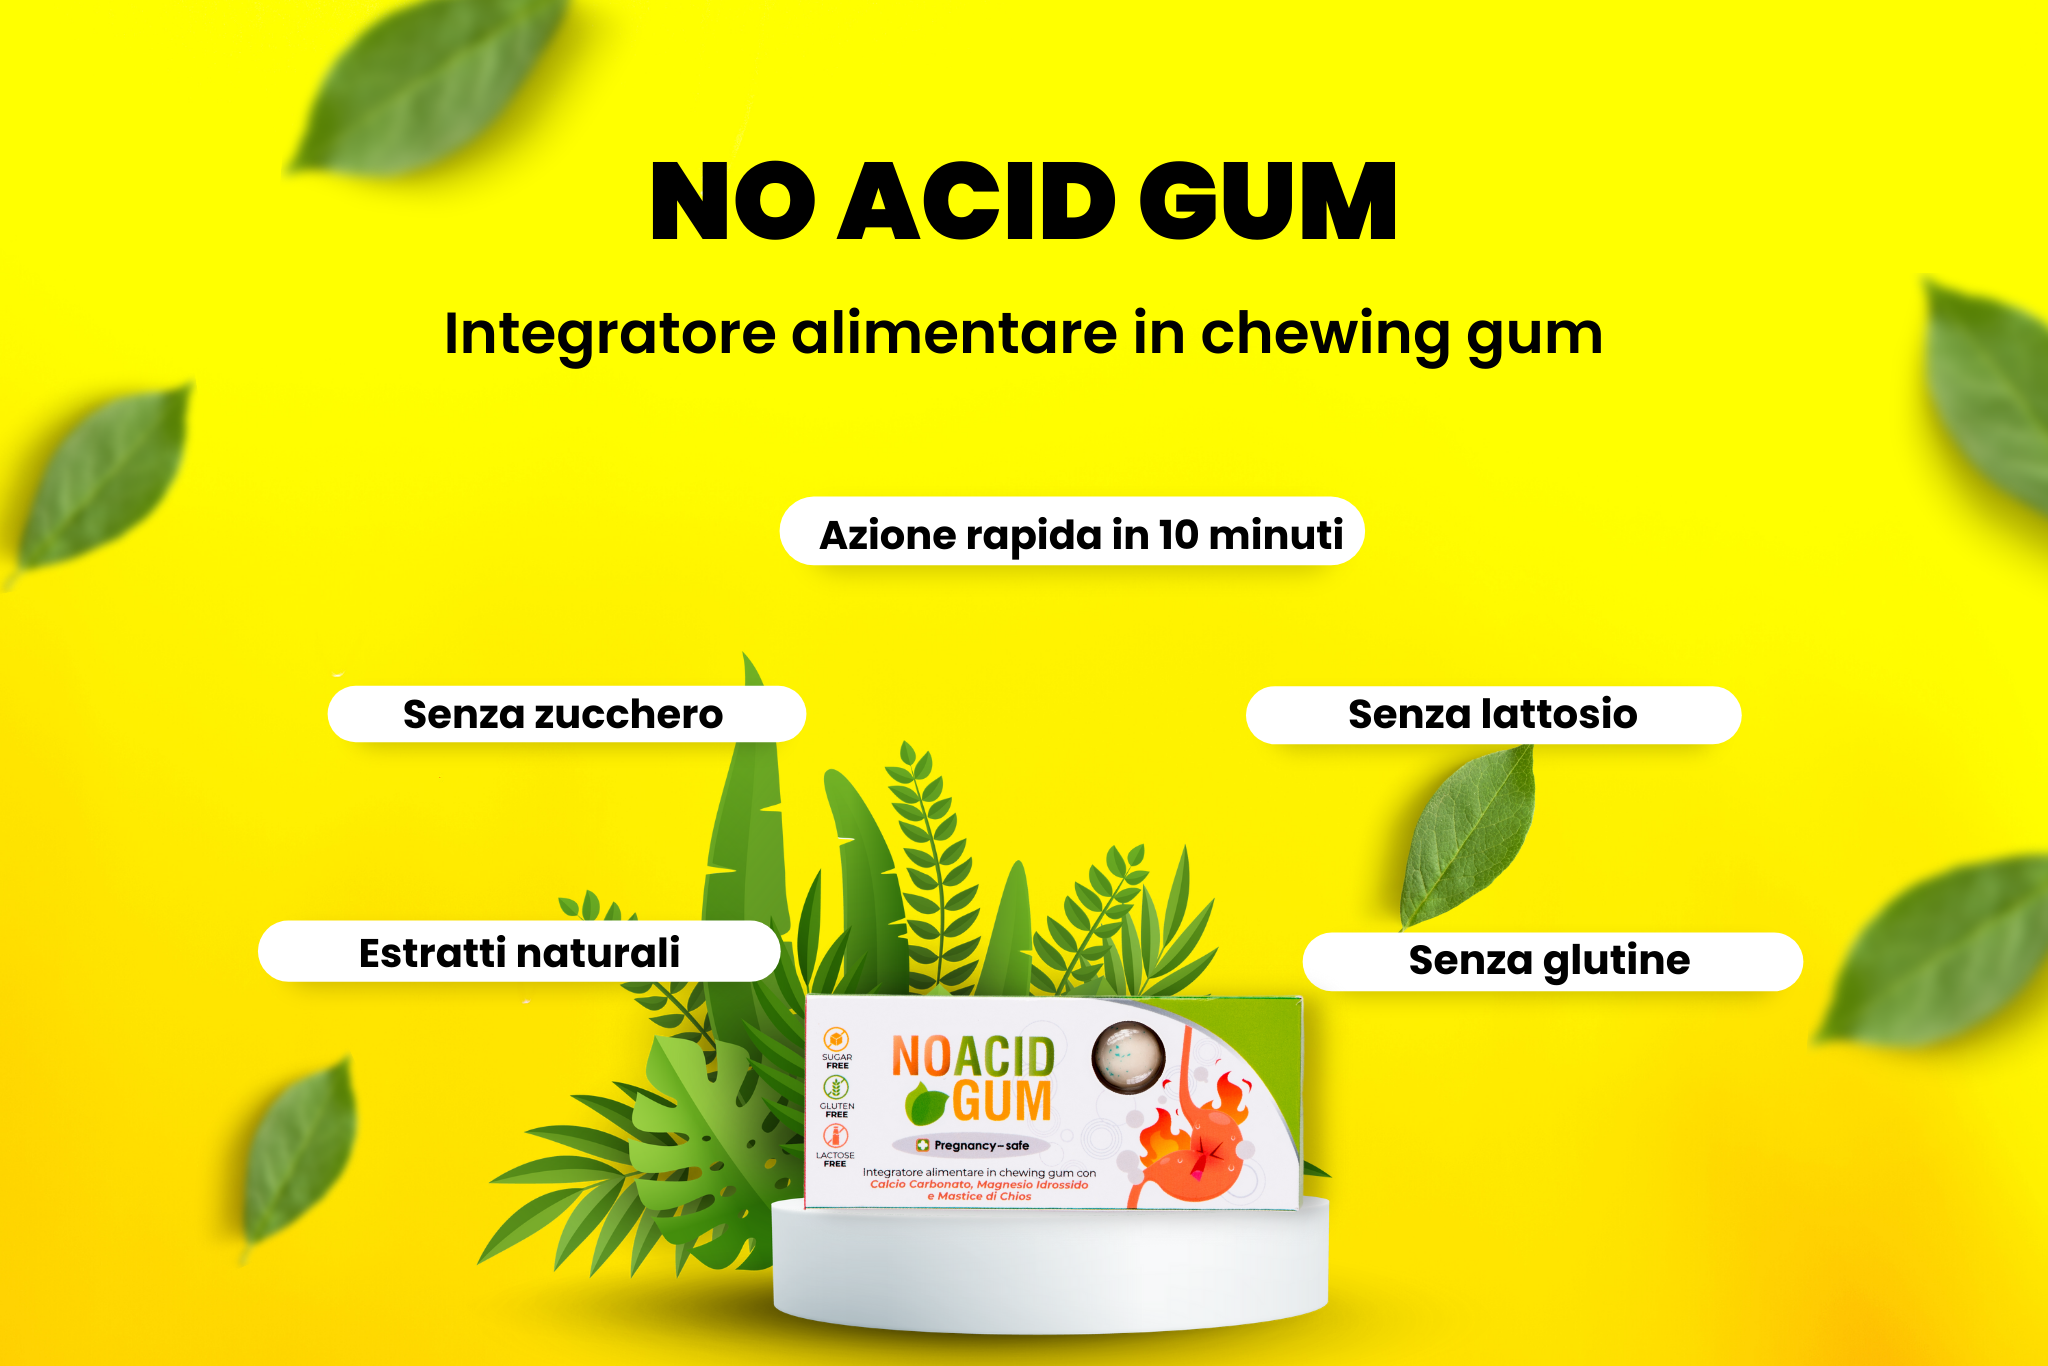 Grafica che unisce l'immagine di No Acid Gum a recensioni positive da parte degli utenti, evidenziando l'efficacia nel contrastare acidità, reflusso e bruciore di stomaco, rendendolo un prodotto apprezzato da chi cerca soluzioni naturali.